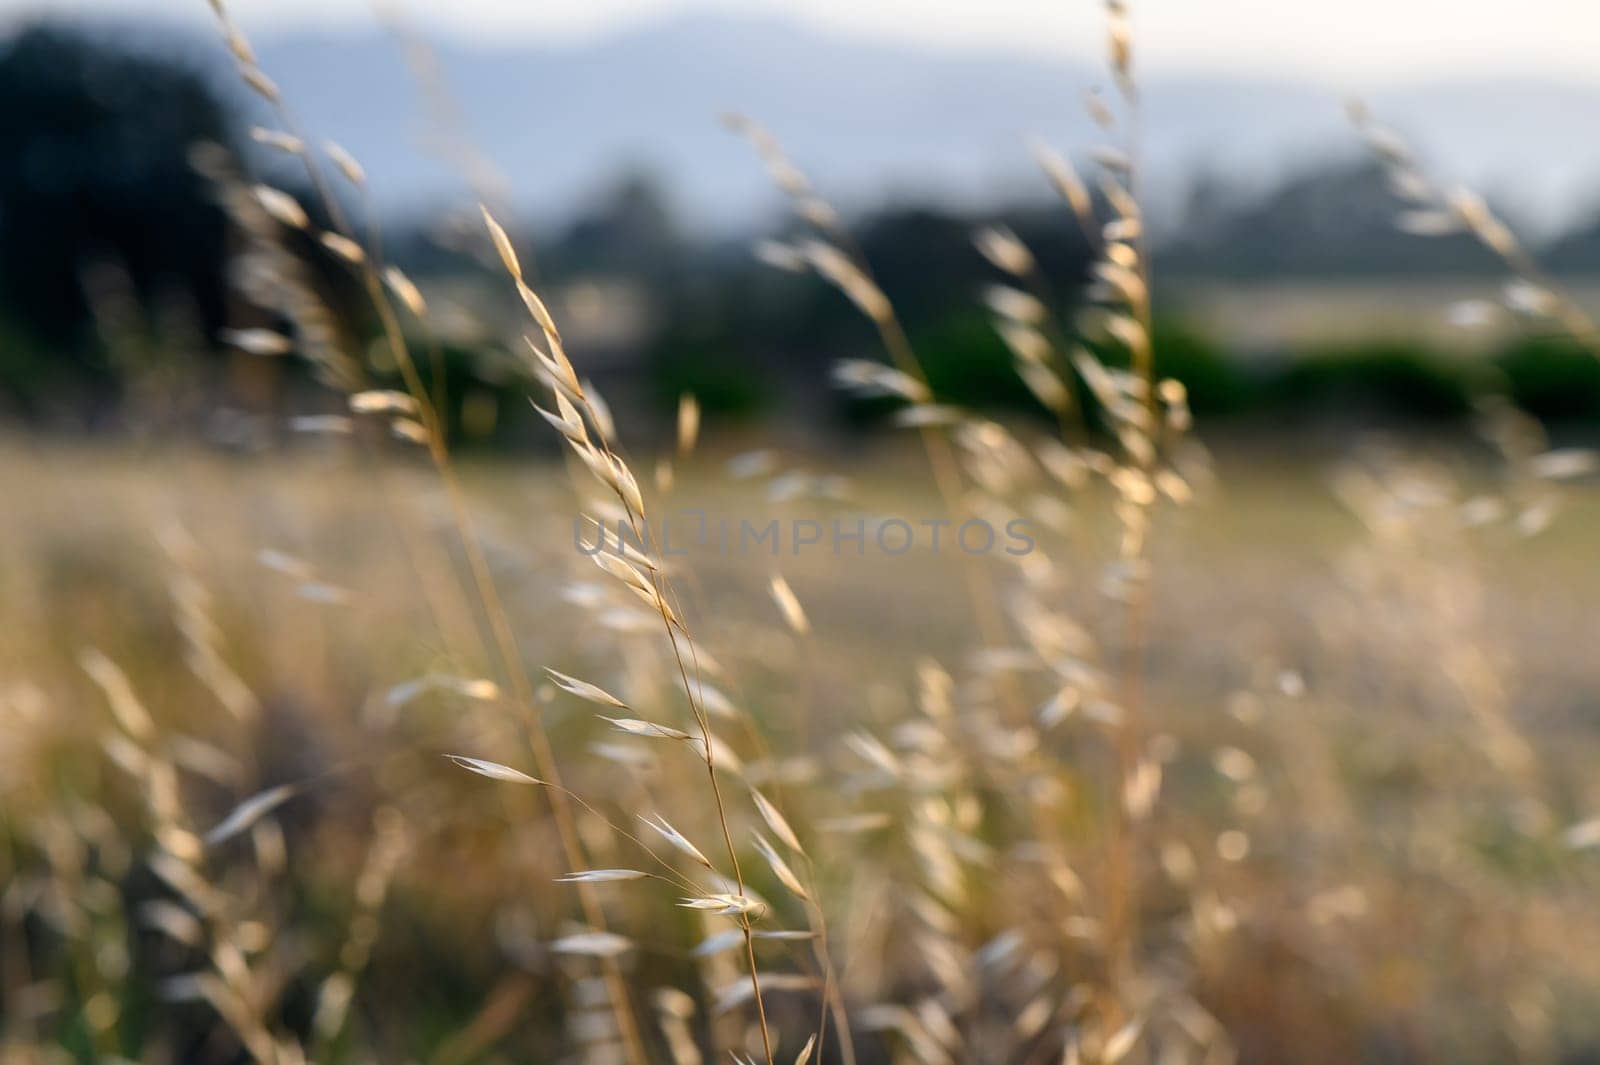 The sun shining through the grass. Wild oats. Avena fatua. Toned image by Mixa74